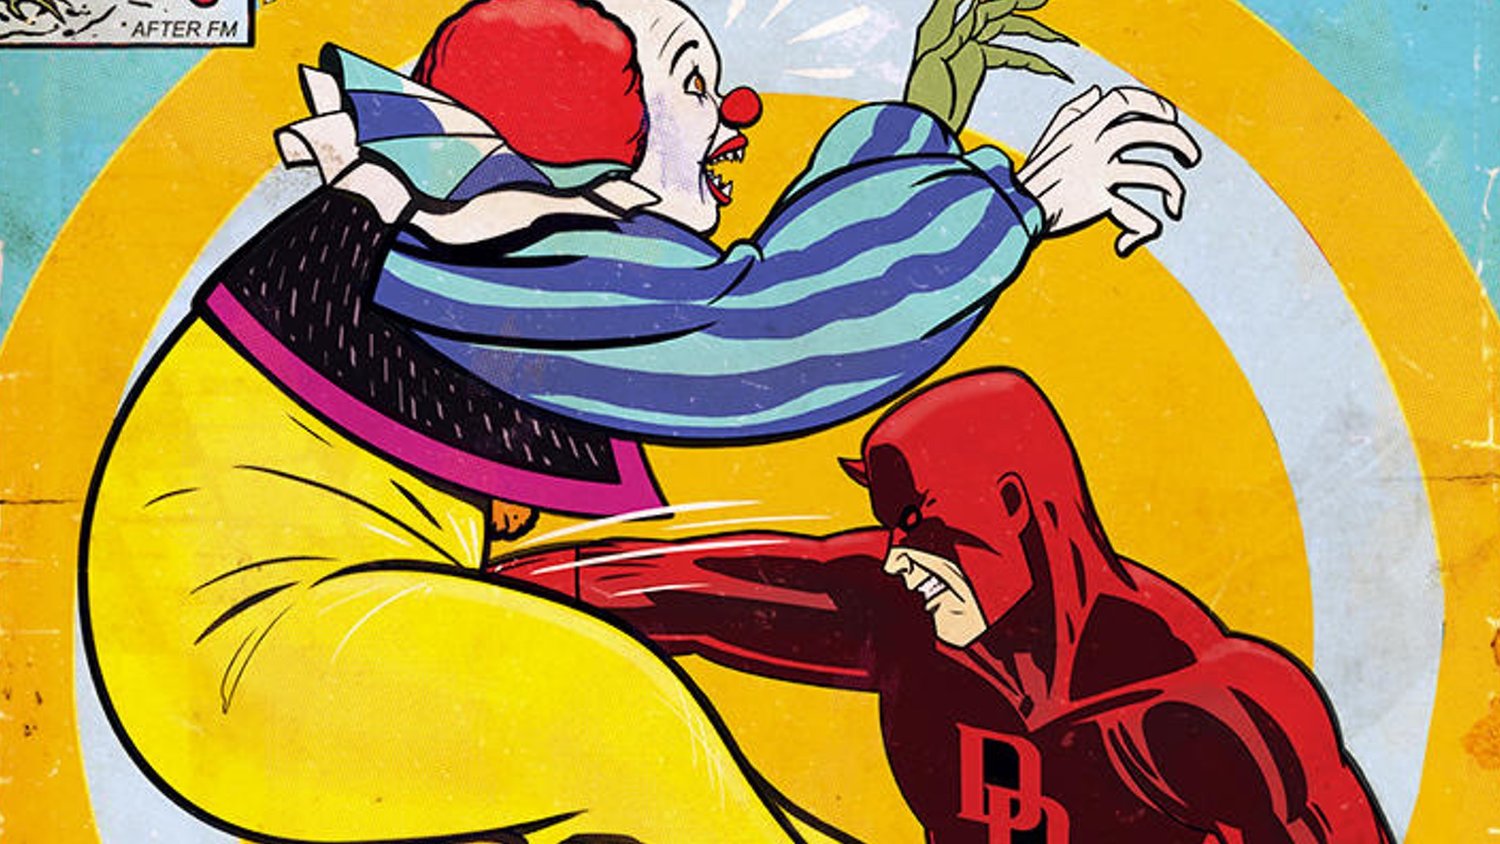 Daredevil Takes On Penny Wise The Clown In Amusing Fan Art